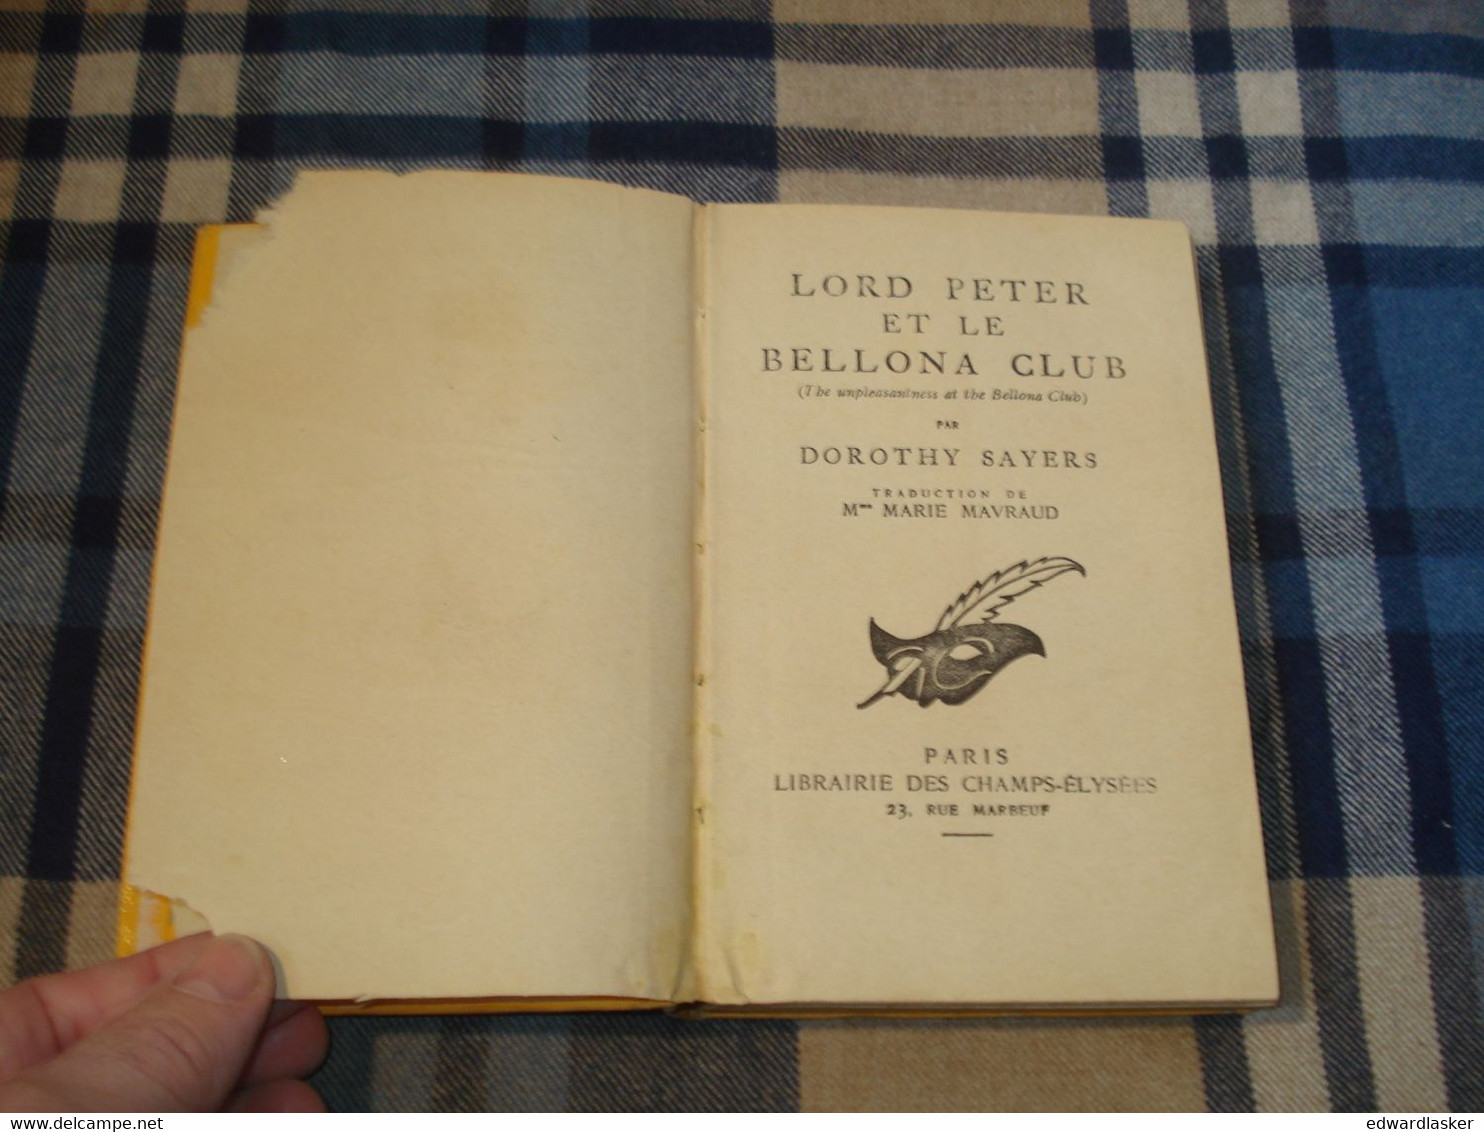 Le MASQUE n°191 : Lord Peter et le Bellona Club /Dorothy Sayers - Cartonné avec jaquette